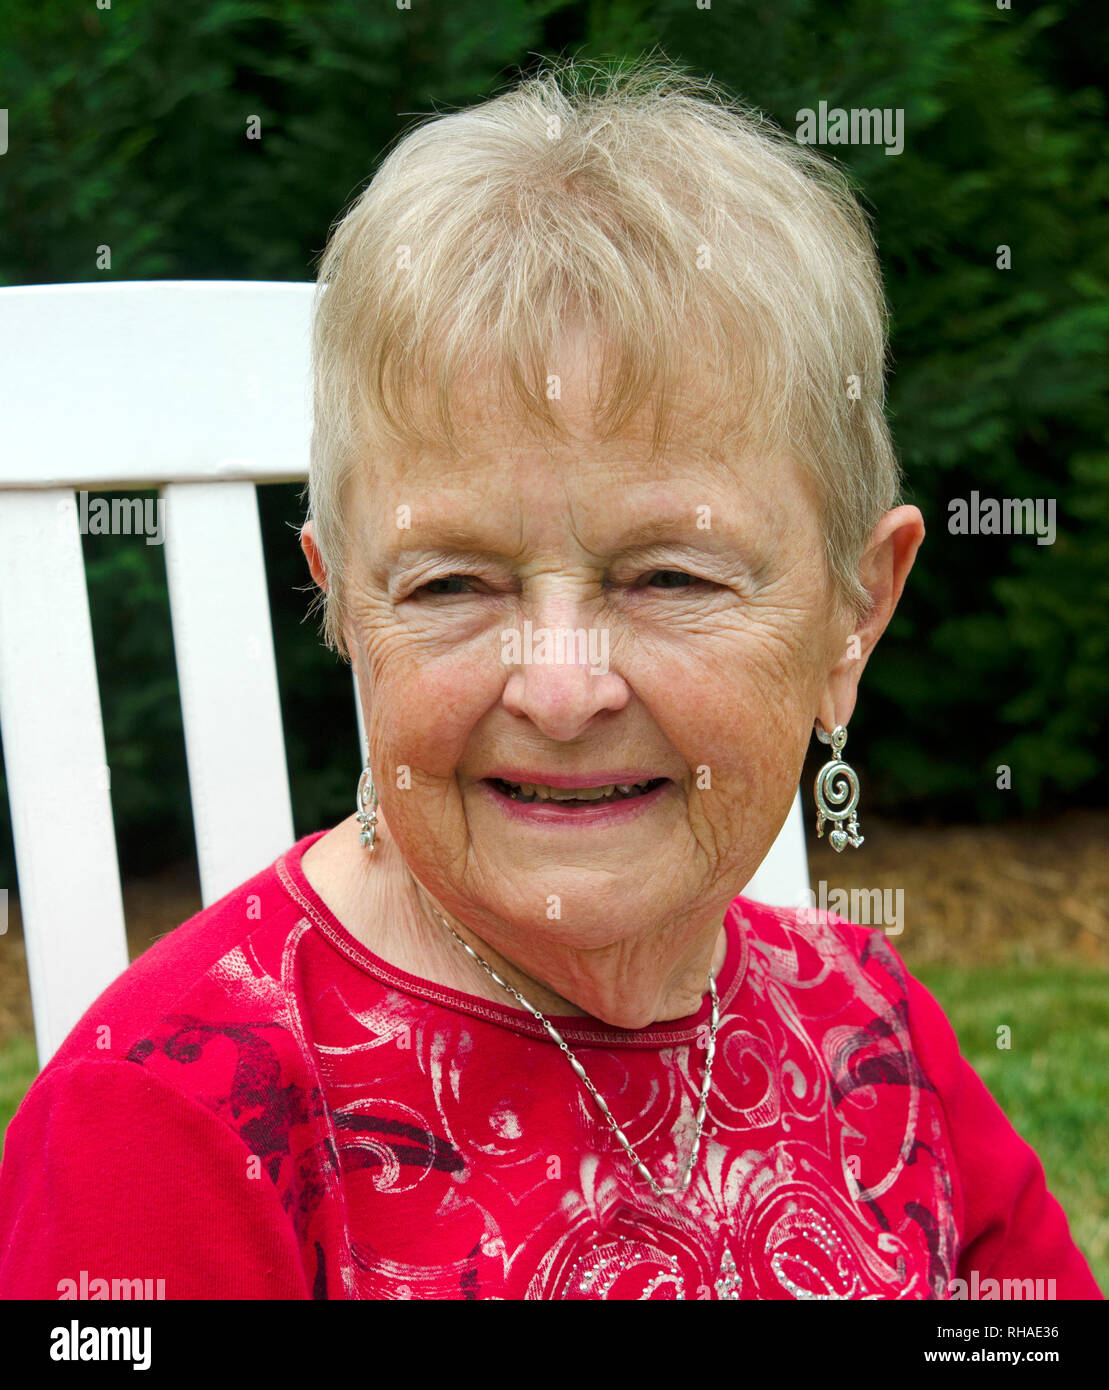 Senior Woman Stock Photo